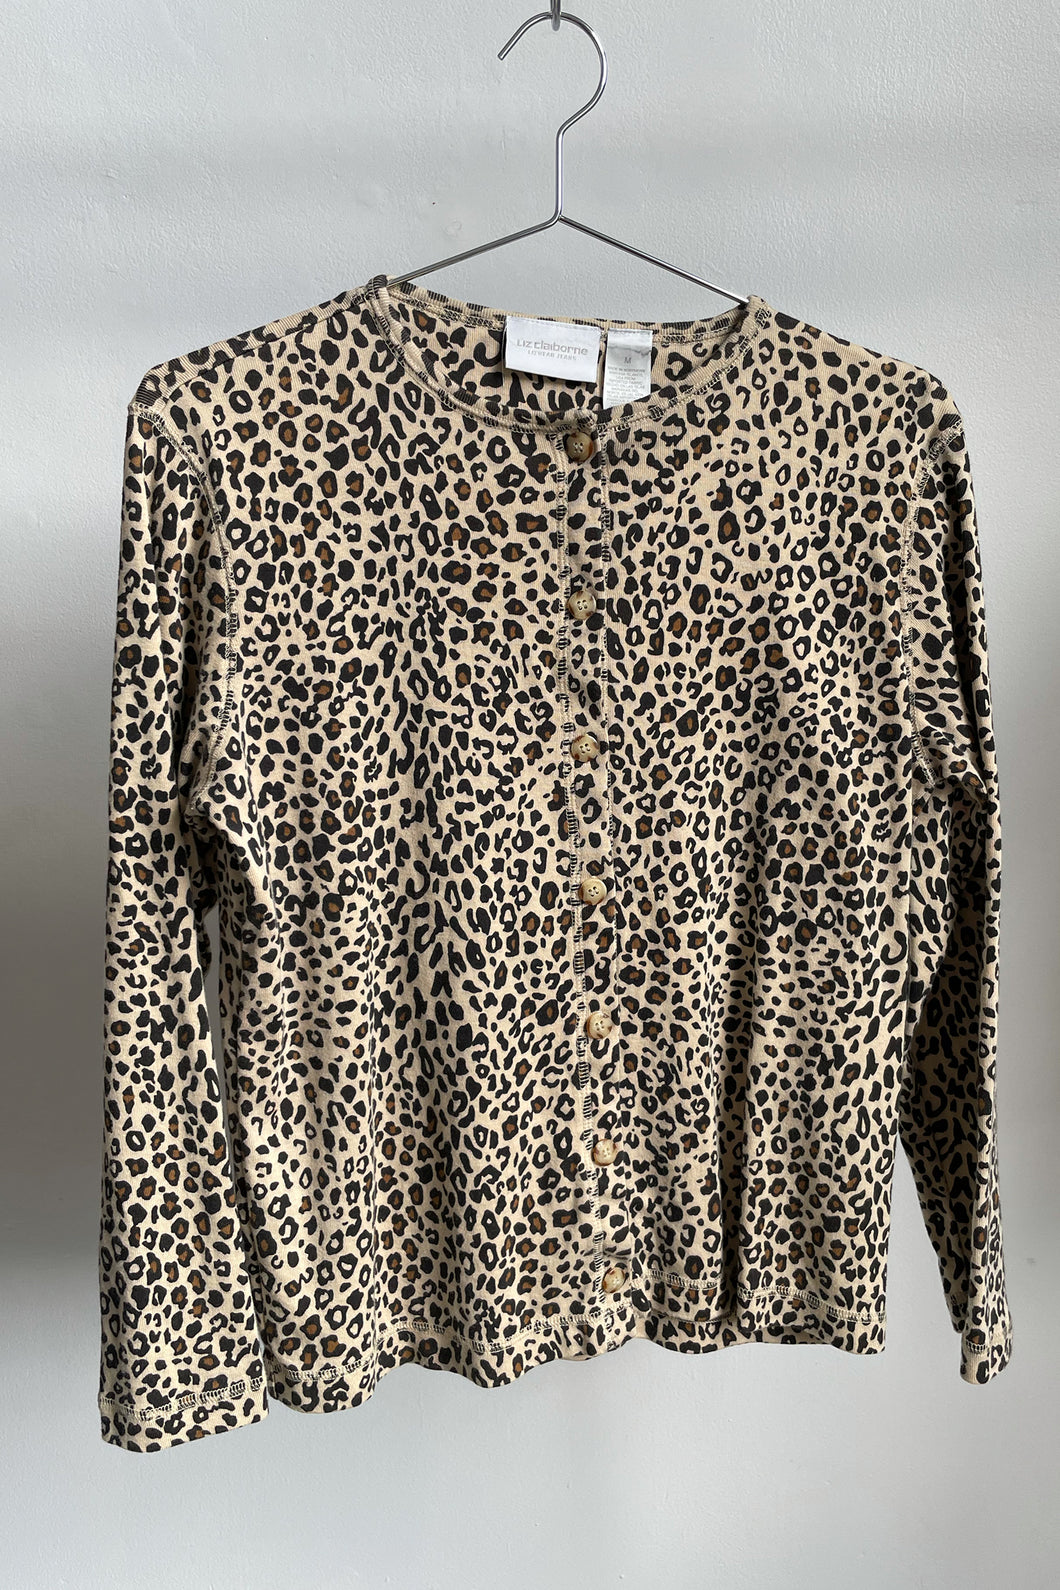 Leopard T-Shirt Cardigan - M